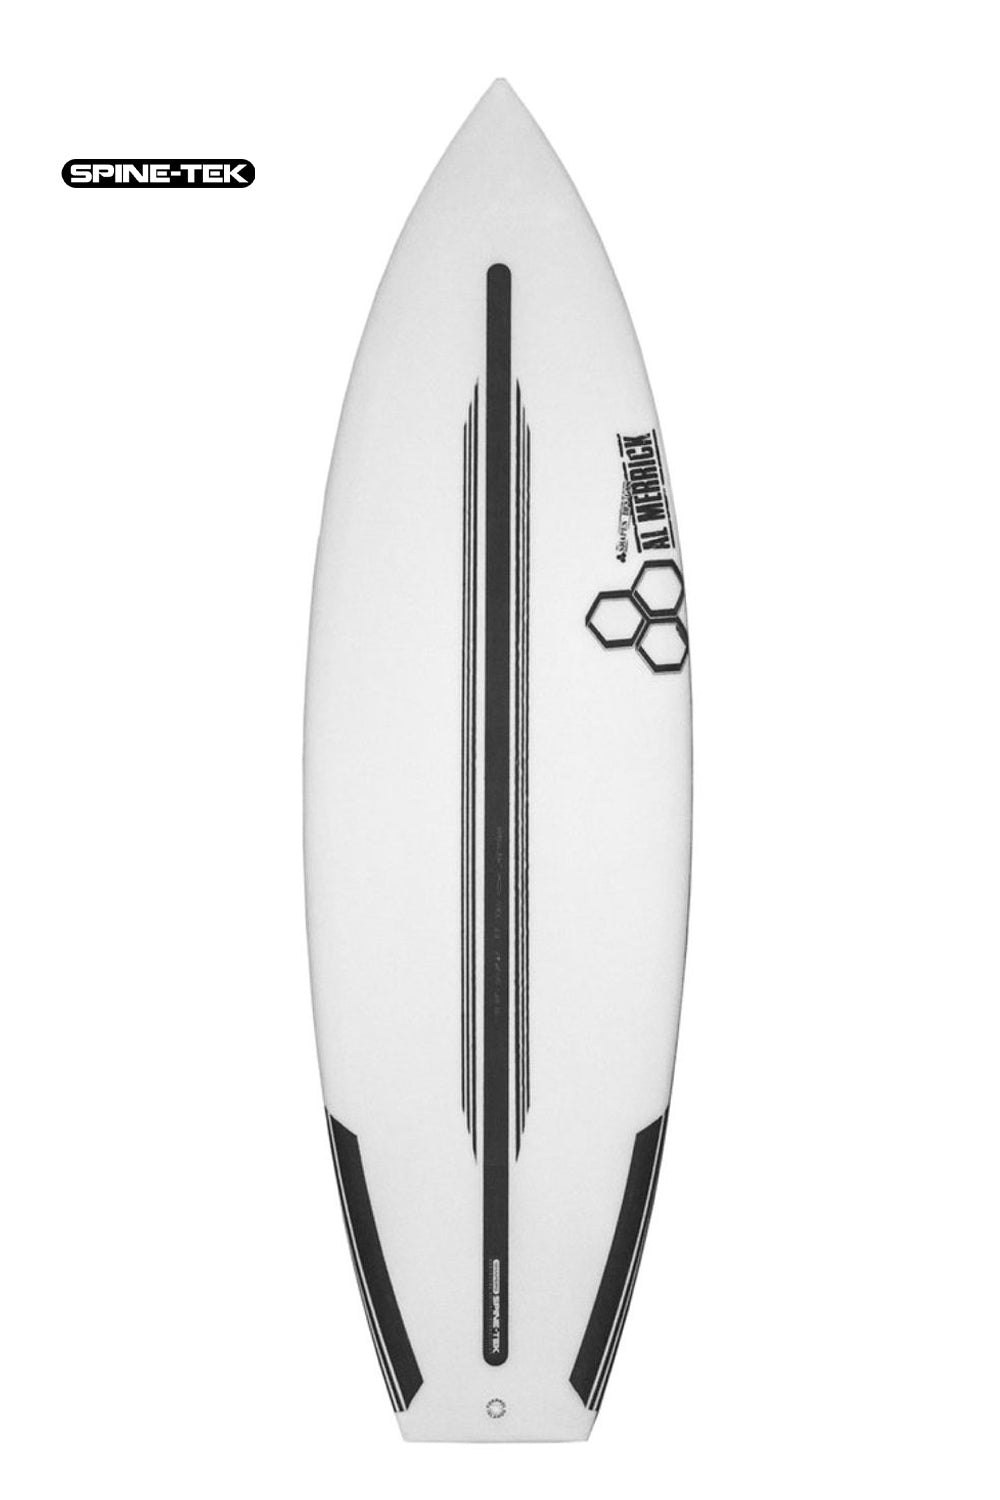 Channel Islands Neck Beard 2 Spine Tek Surfboard